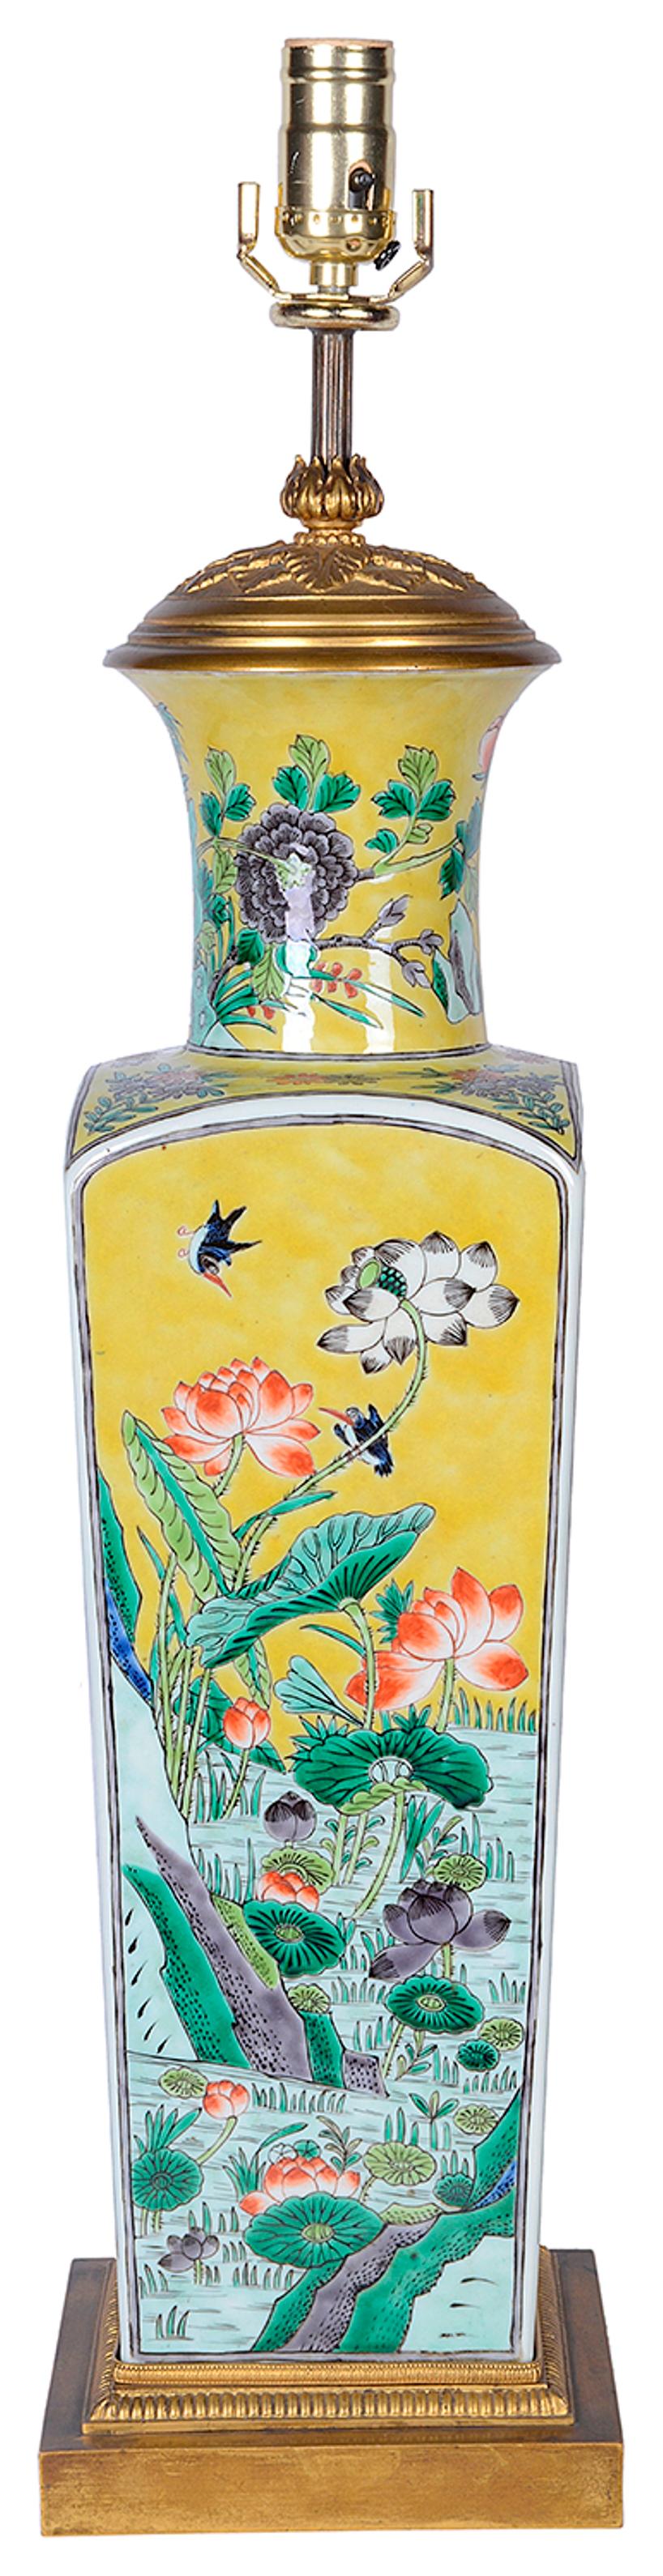 Un très bon vase / lampe de la famille verte chinoise de la fin du 19ème siècle, ayant un fond jaune avec des fleurs exotiques, des oiseaux et des papillons. Monté sur une base en bronze doré.